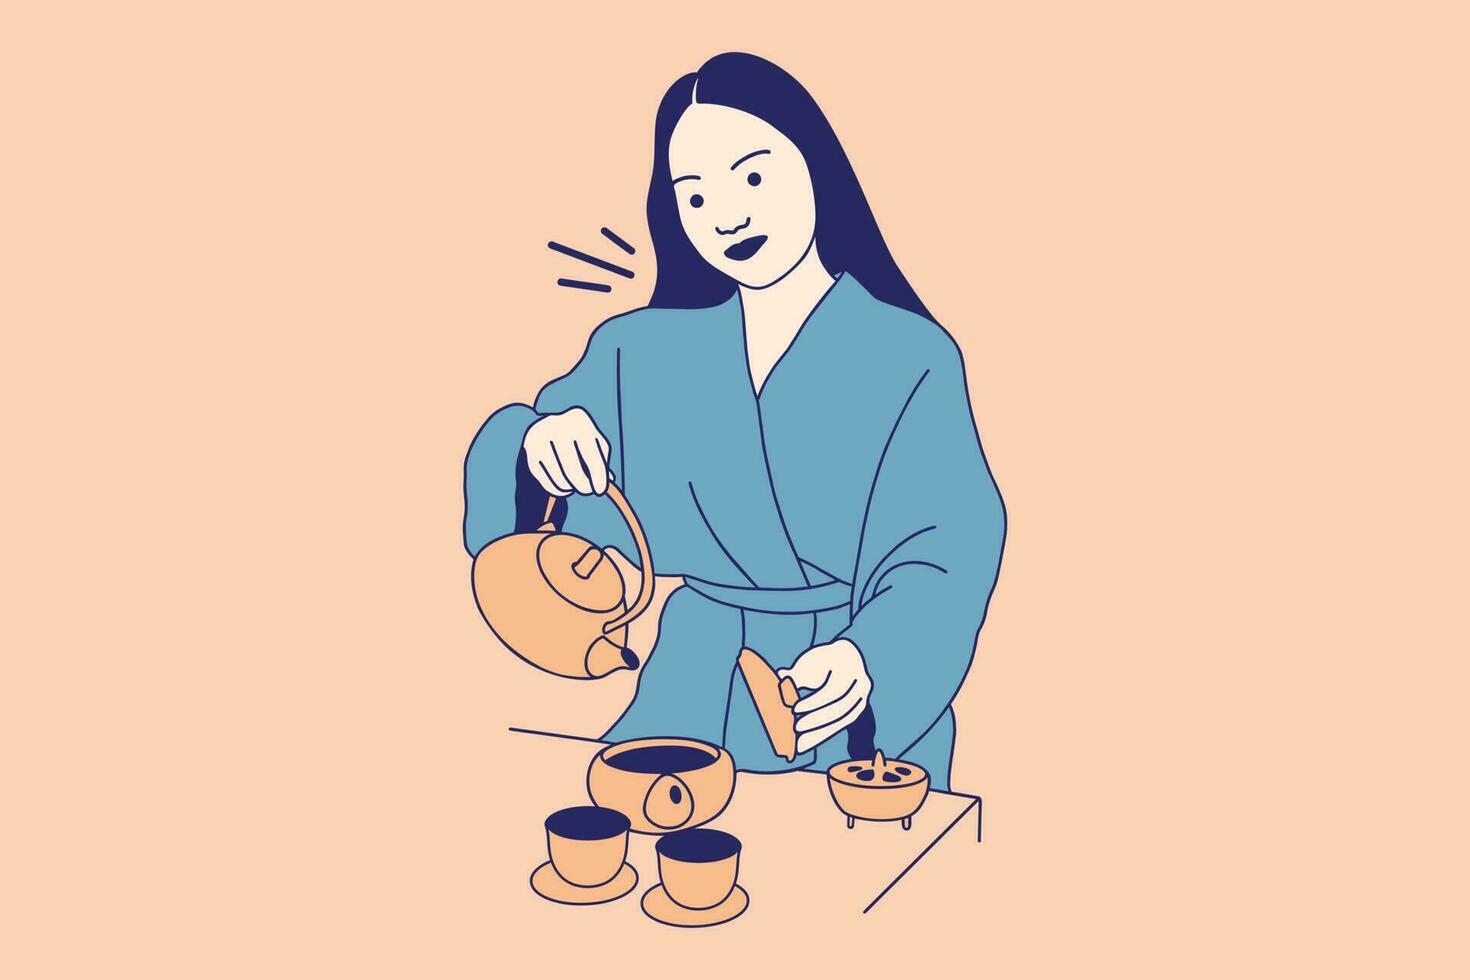 illustrationer av skön ung kvinna häller te från en svart kasta järn tekanna vektor